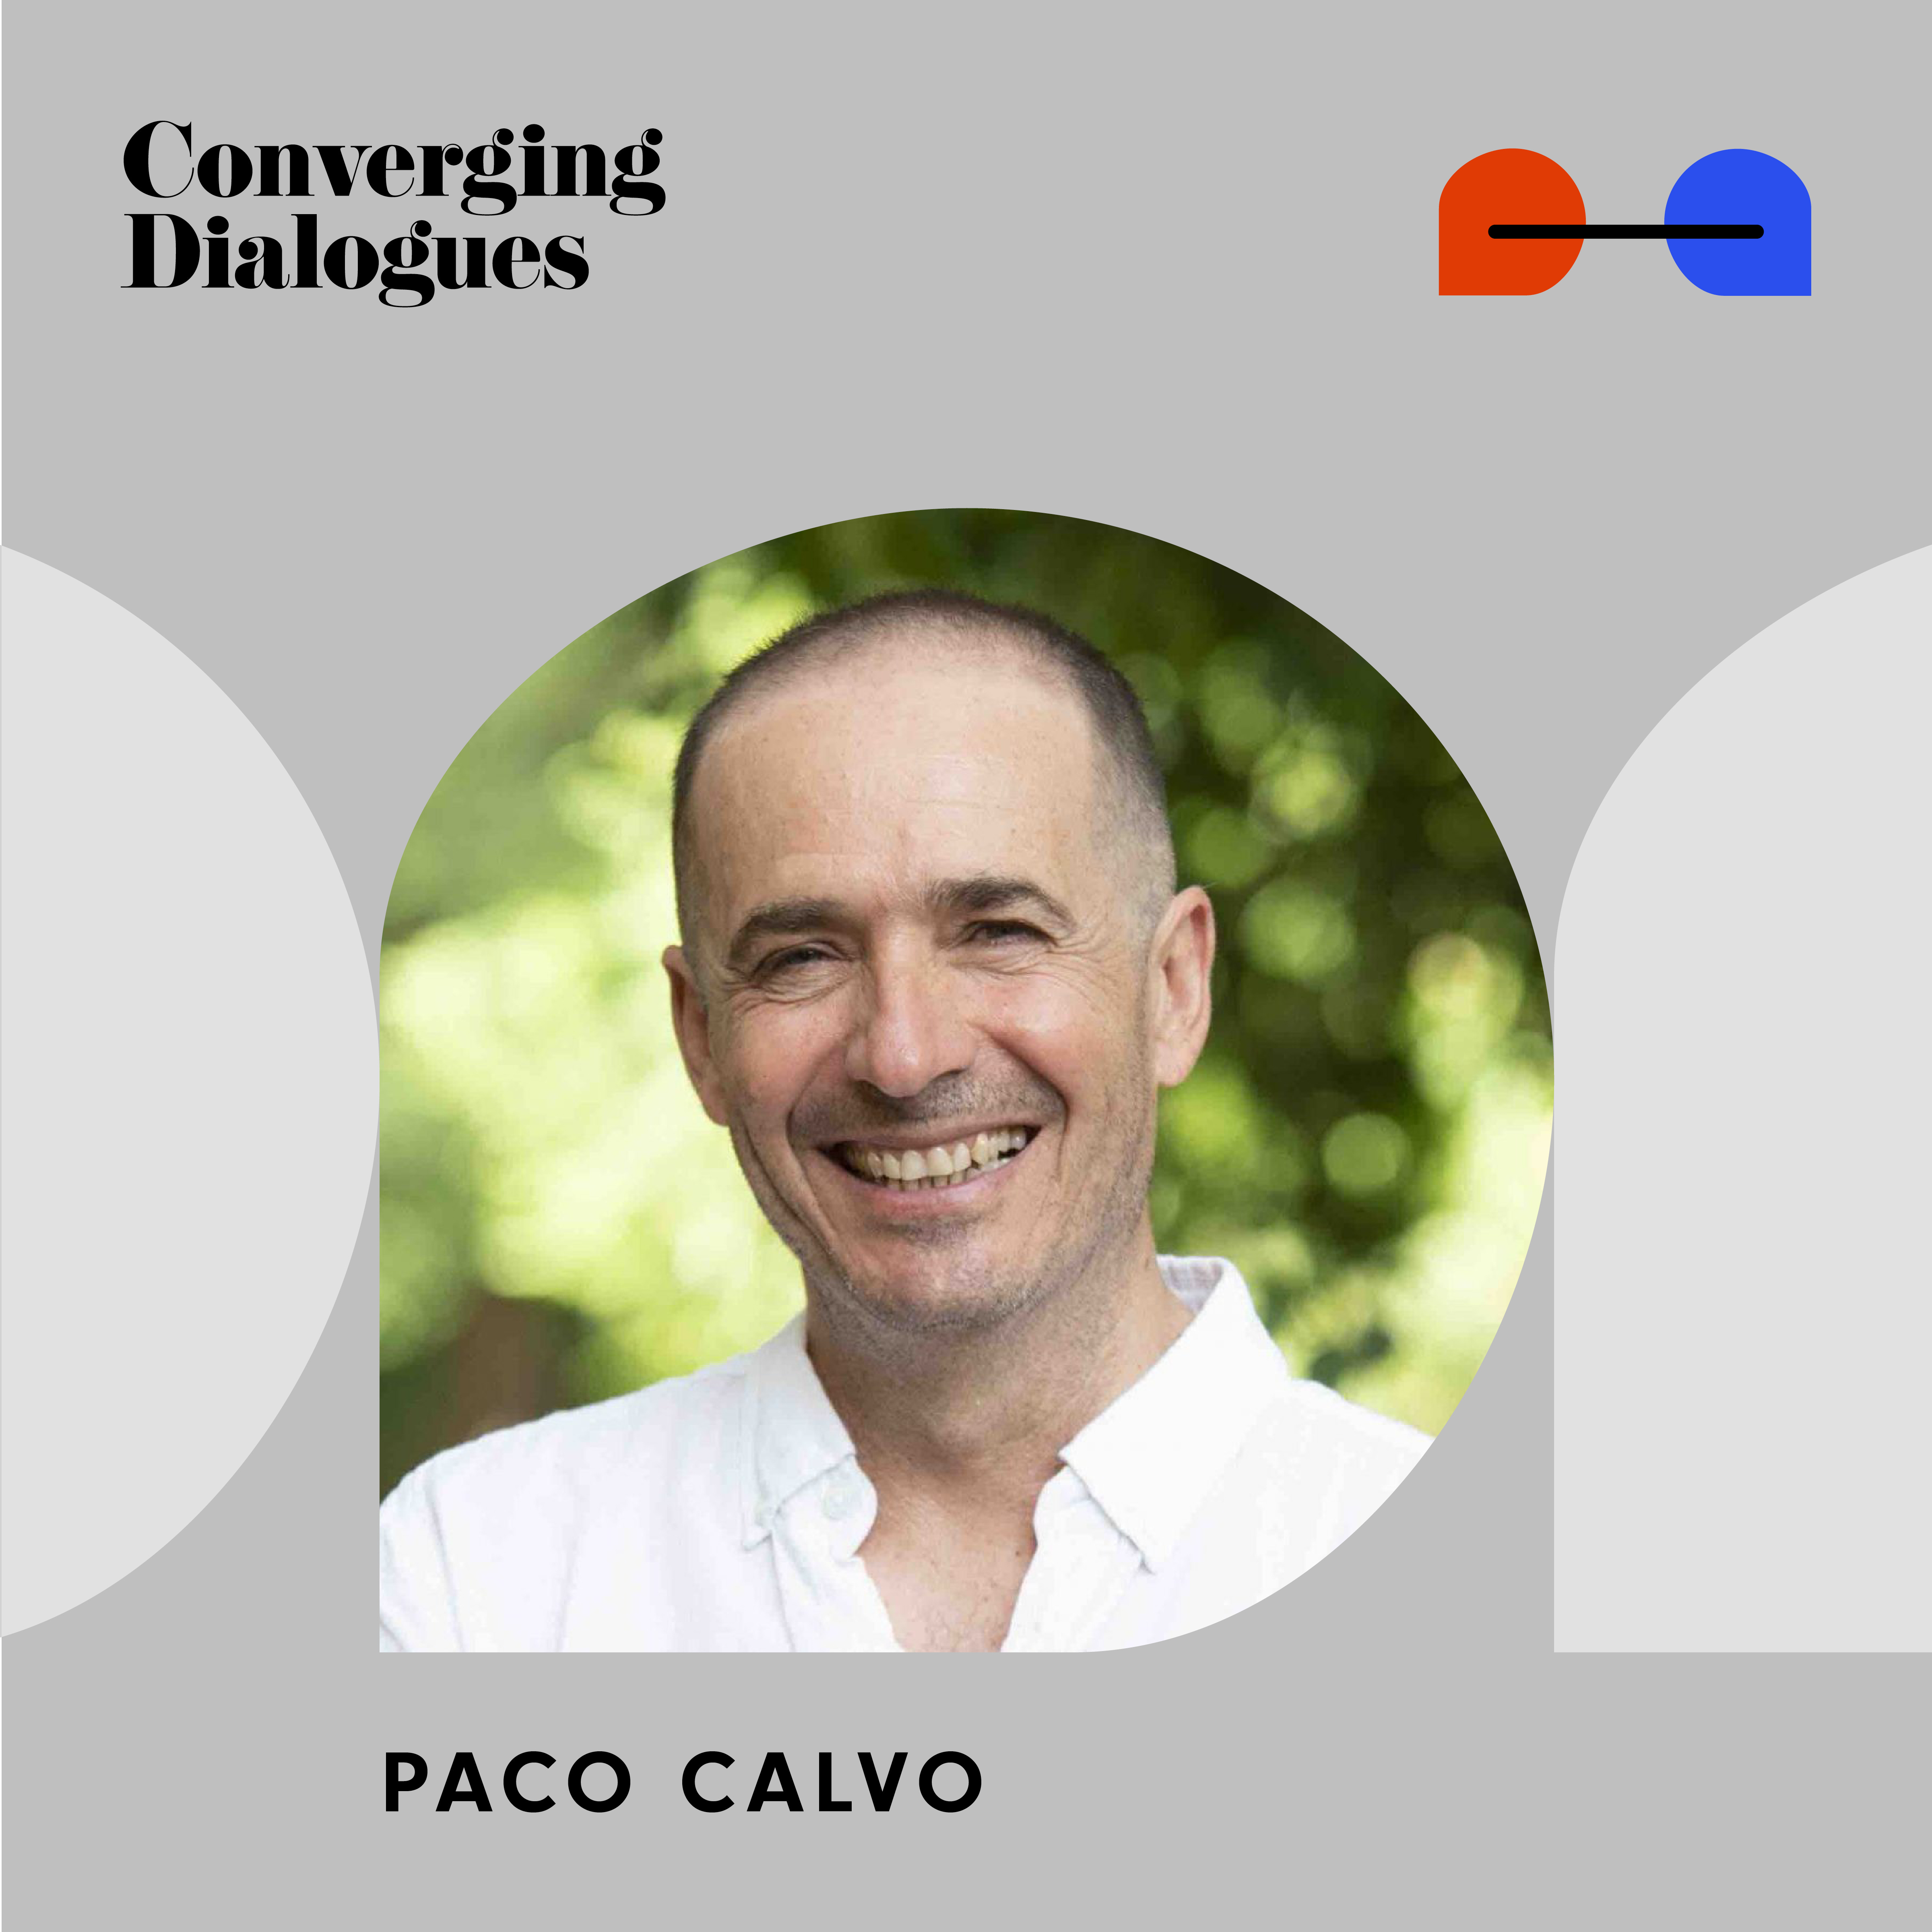 #339 - Planta Sapiens: A Dialogue with Paco Calvo